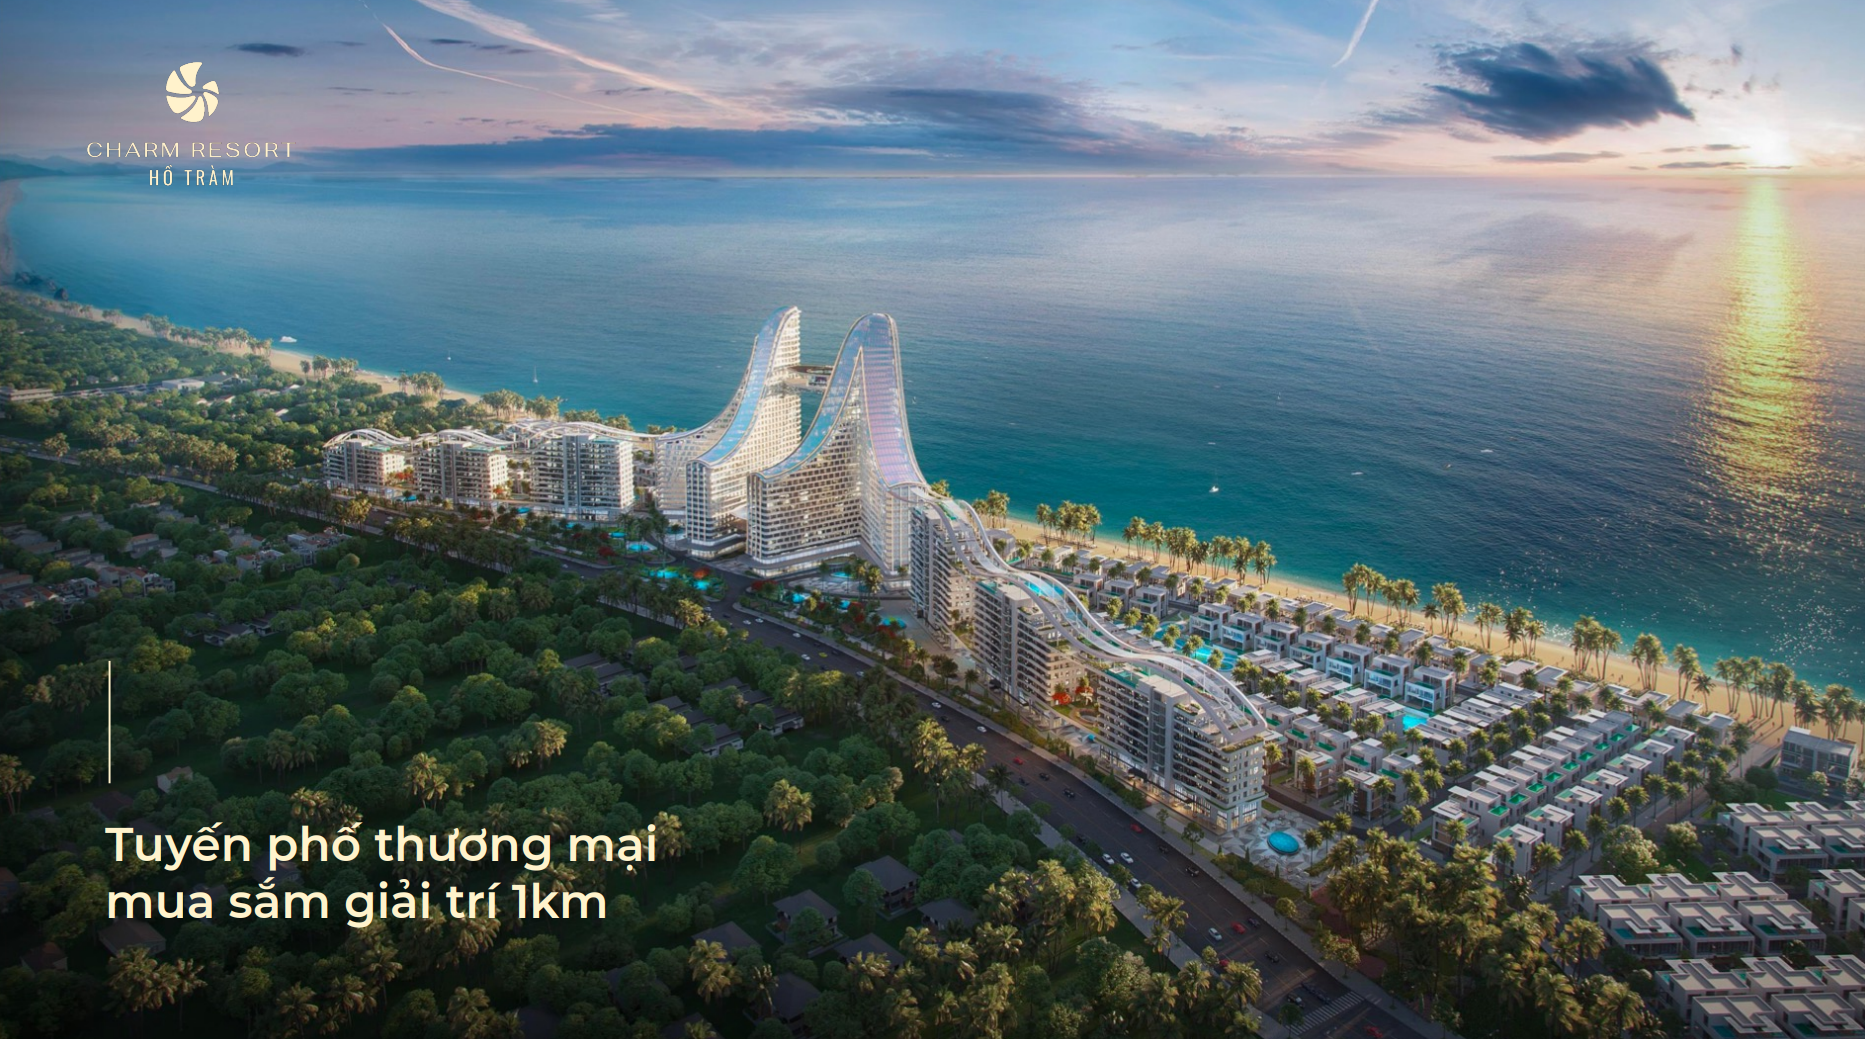 Tuyến phố thương mại dài 1km tại The Sea Class Charm Resort Hồ Tràm